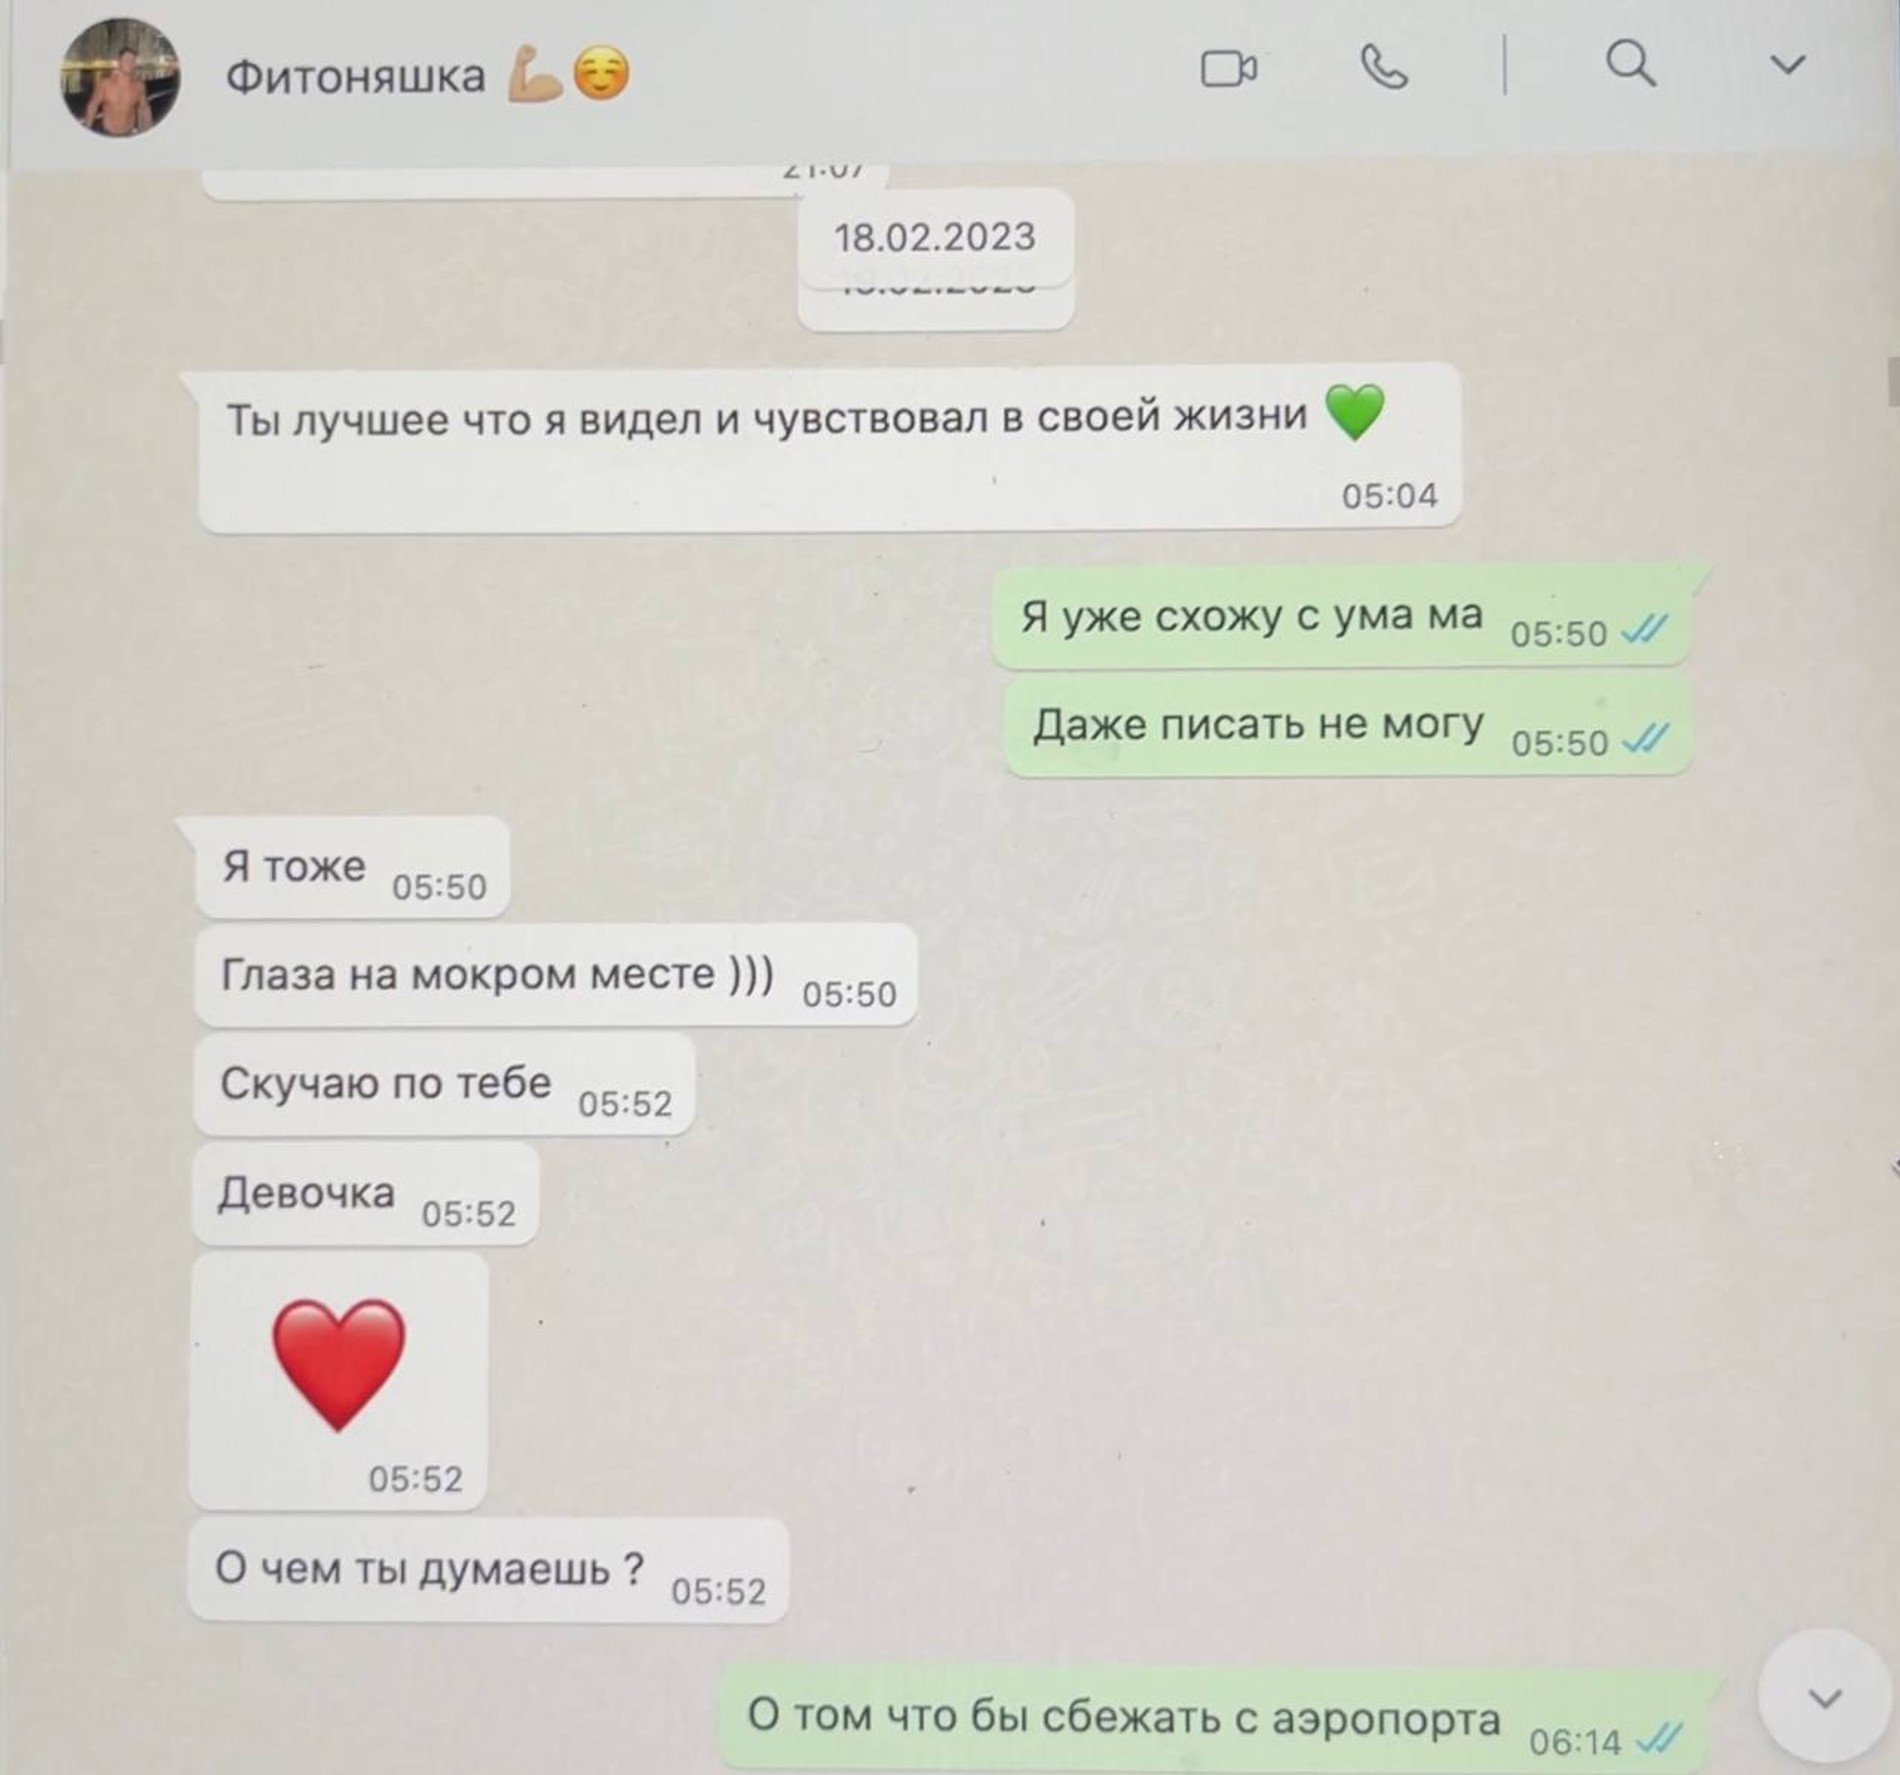 Скрины интимной переписки мужа с любовницей, которые выложила Марина Африкантова
Фото: Telegram-канал Afrikantova